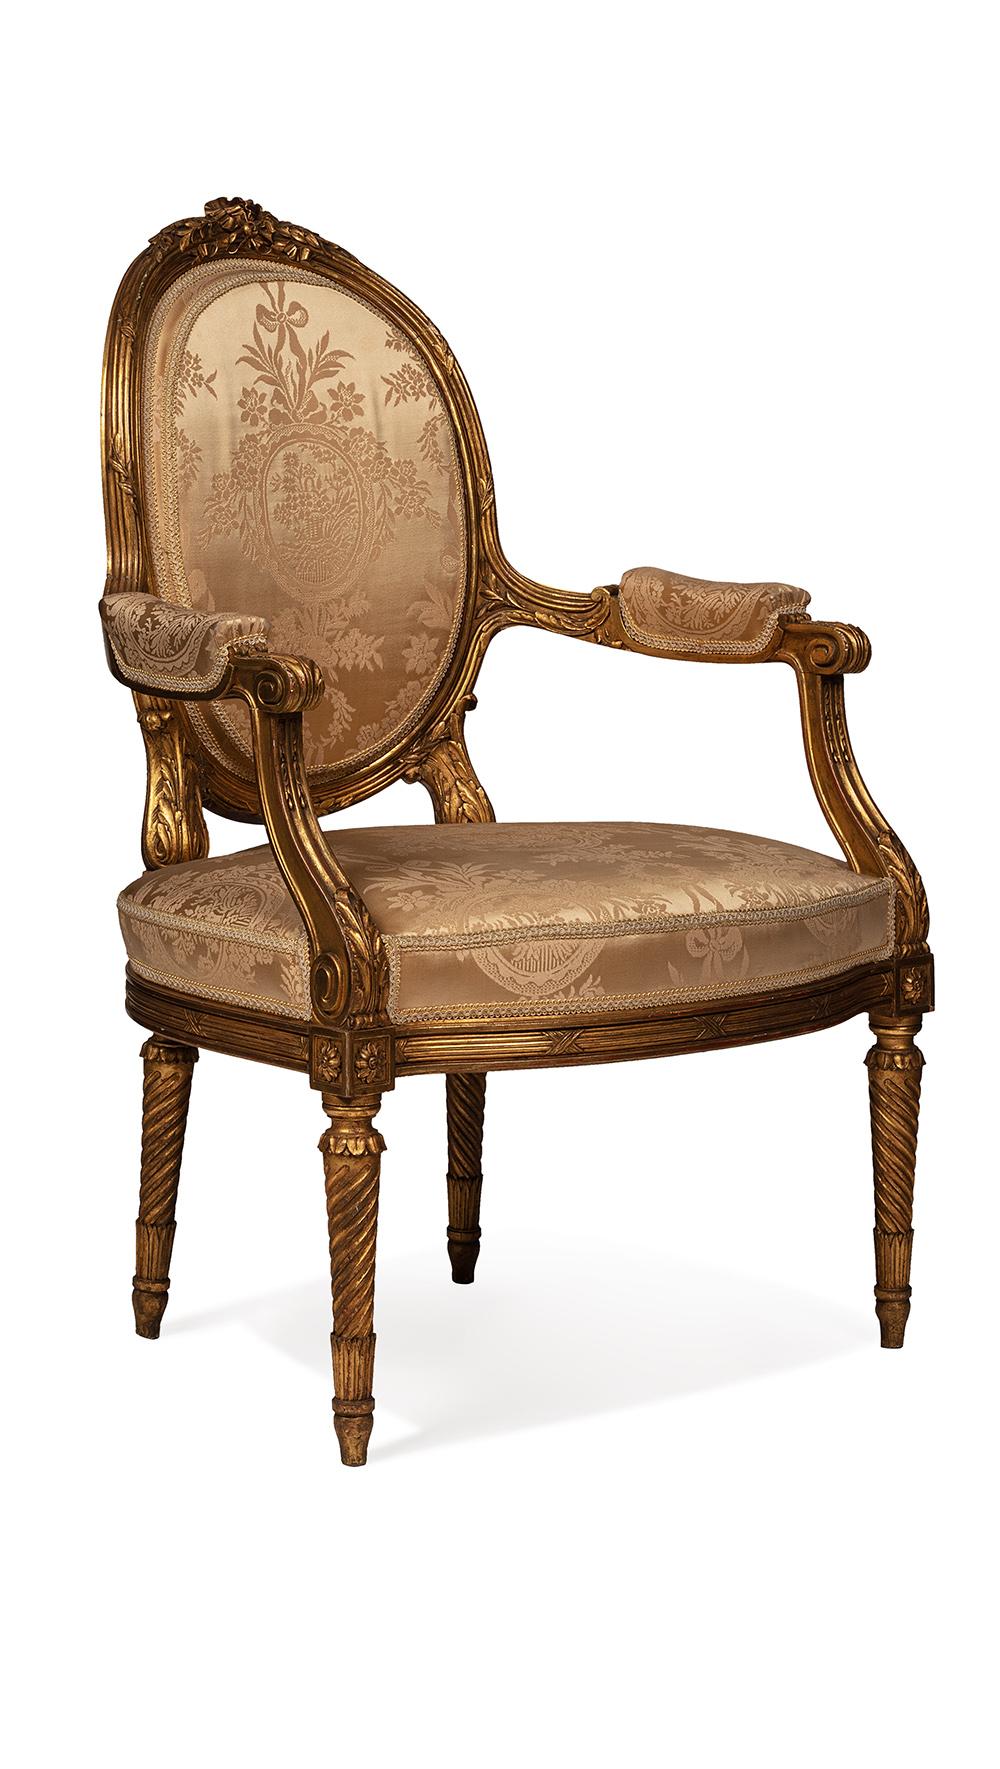 Un magnifique salon de style louis XVI en bois doré comprenant quatre fauteuils
et un canapé, modèle exceptionnel d'après le célèbre ébéniste jean batpiste sene
spécialiste des sièges
cet ensemble salon appel salon avec des pieds tournés prouve